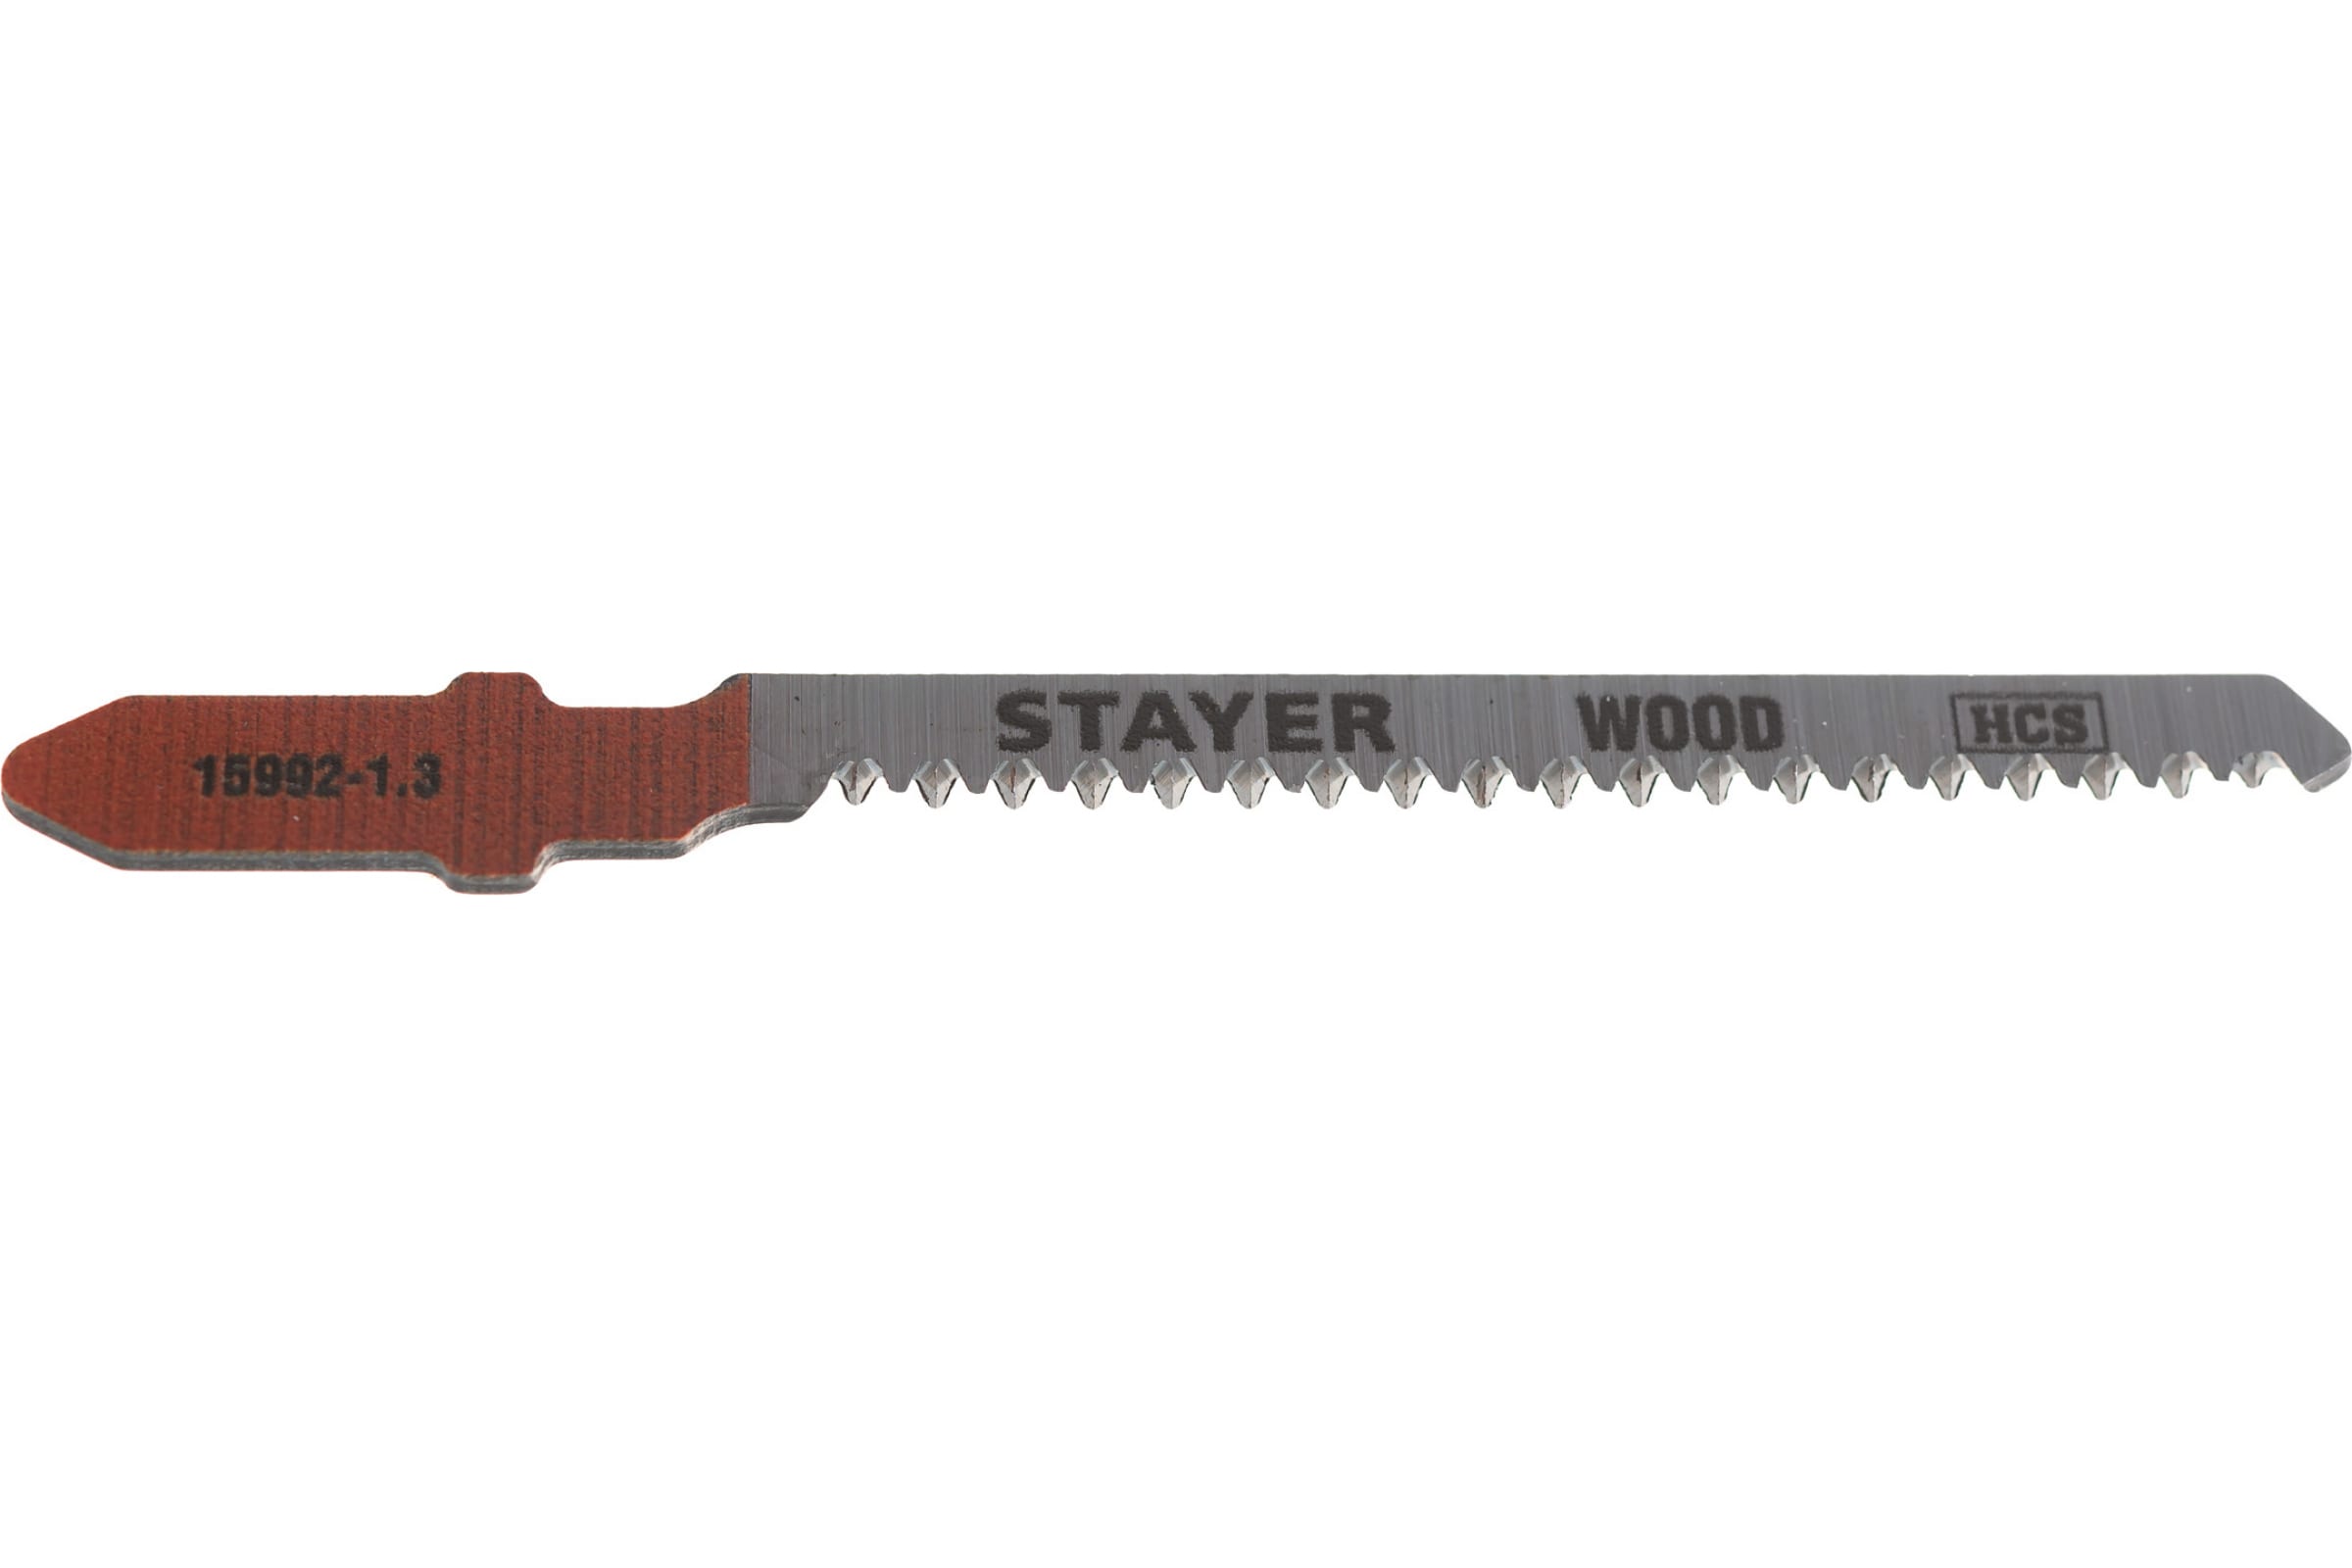 STAYER T101AO, полотна для лобзика, HCS сталь, фигурный рез, 2шт,Professional,15992-1.3